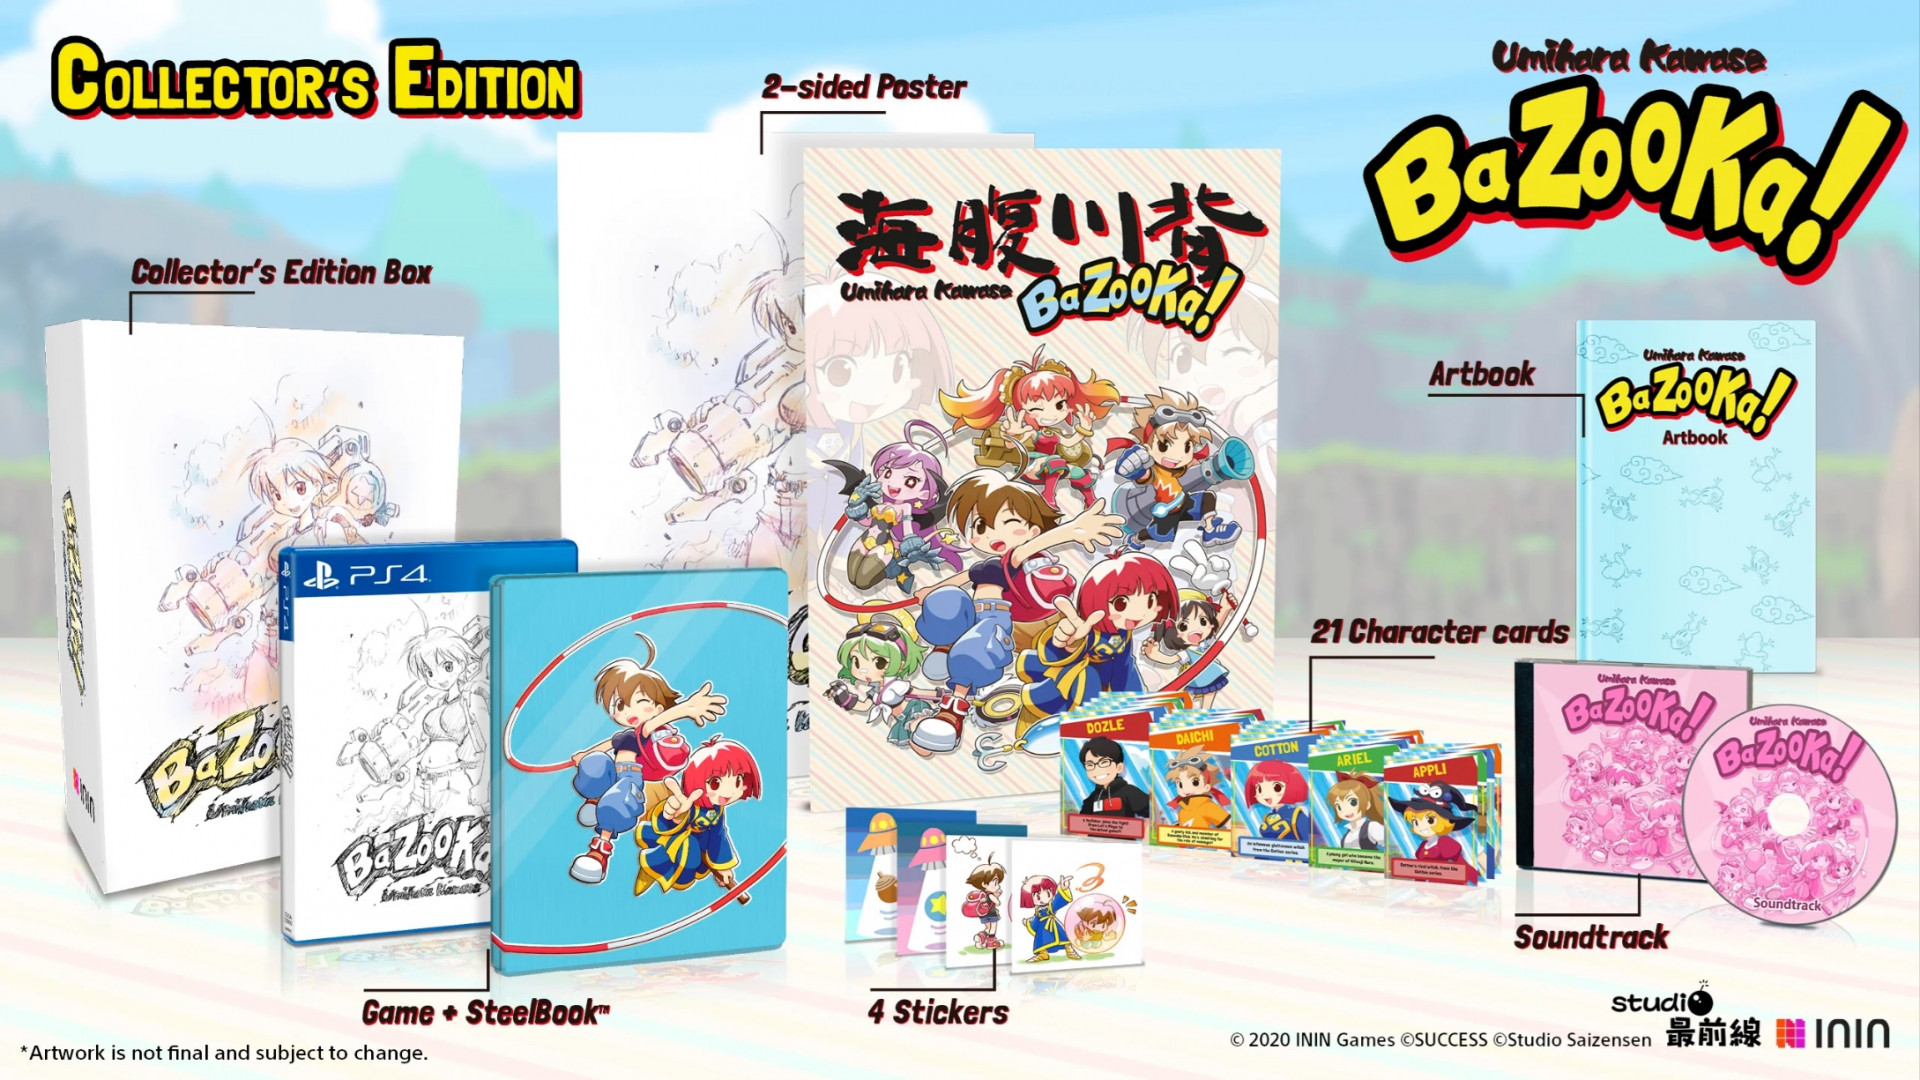 Umihara Kawase BaZooKa! - Collector's Edition (PS4), Inin Games